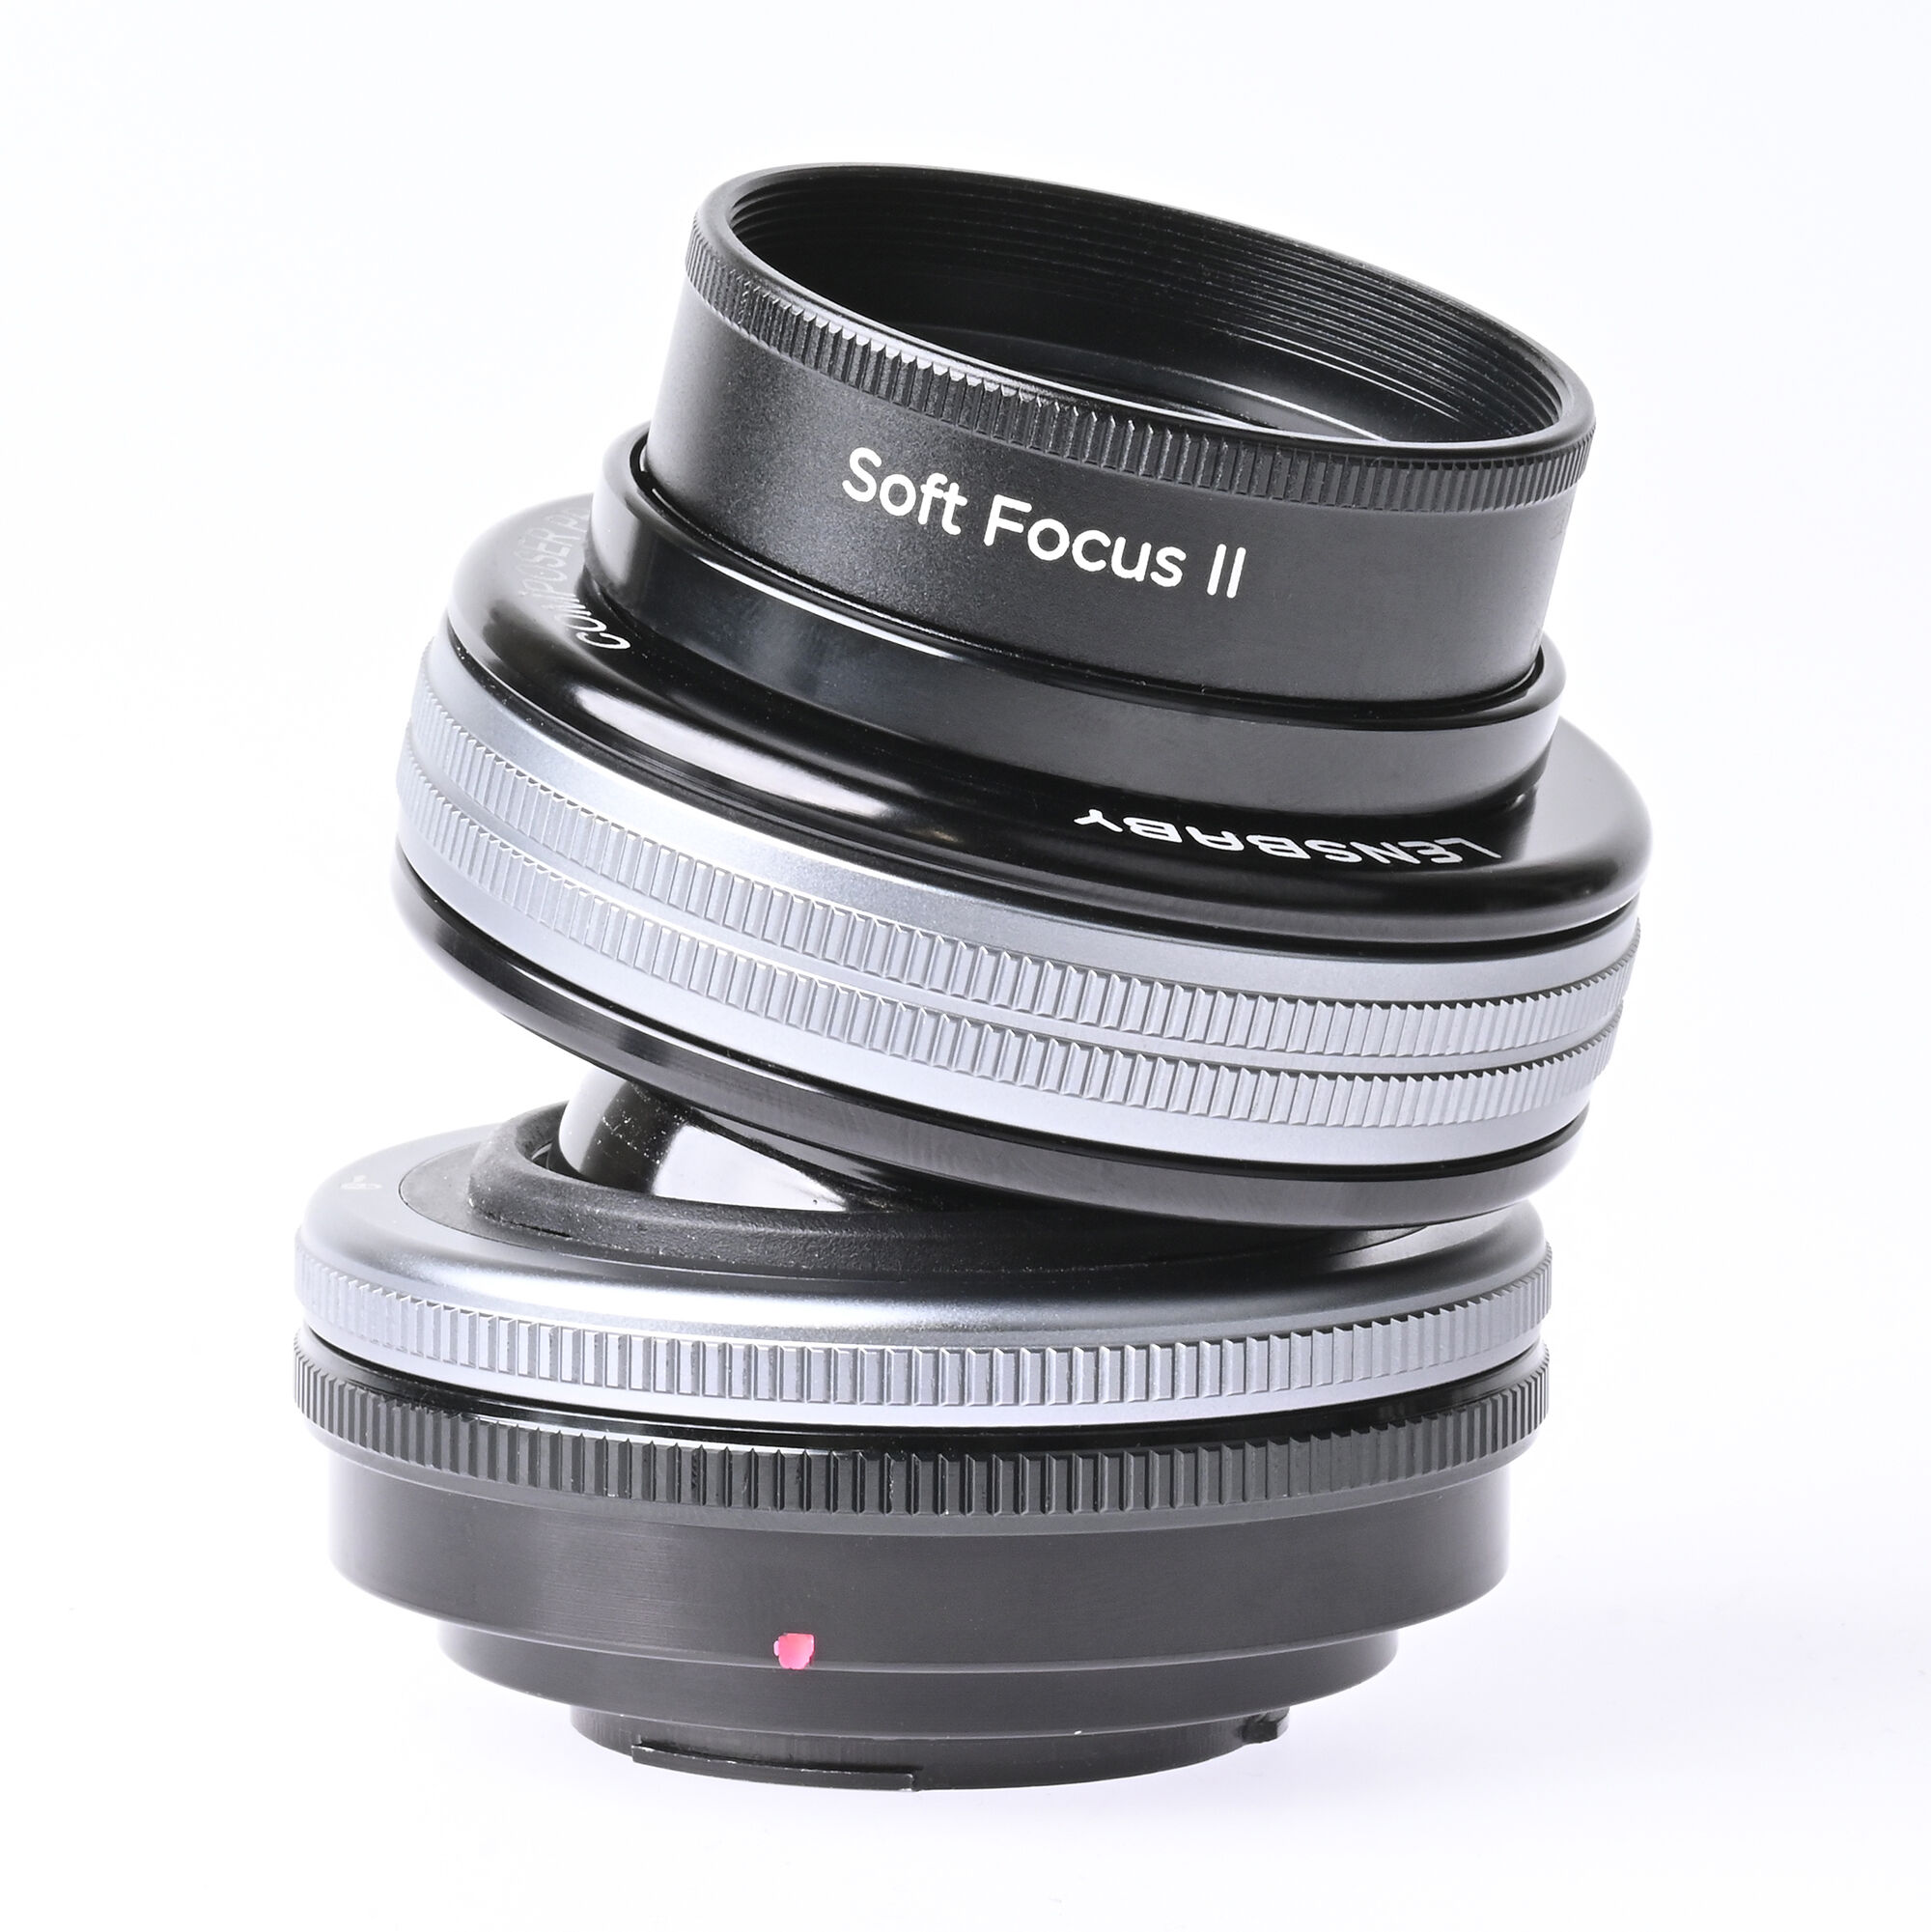 ソフトフォーカス＋ティルト位置調整ができるモデル「Lensbaby コンポーザープロII Soft Focus II」が発売 | 新製品情報 |  ケンコー・トキナー